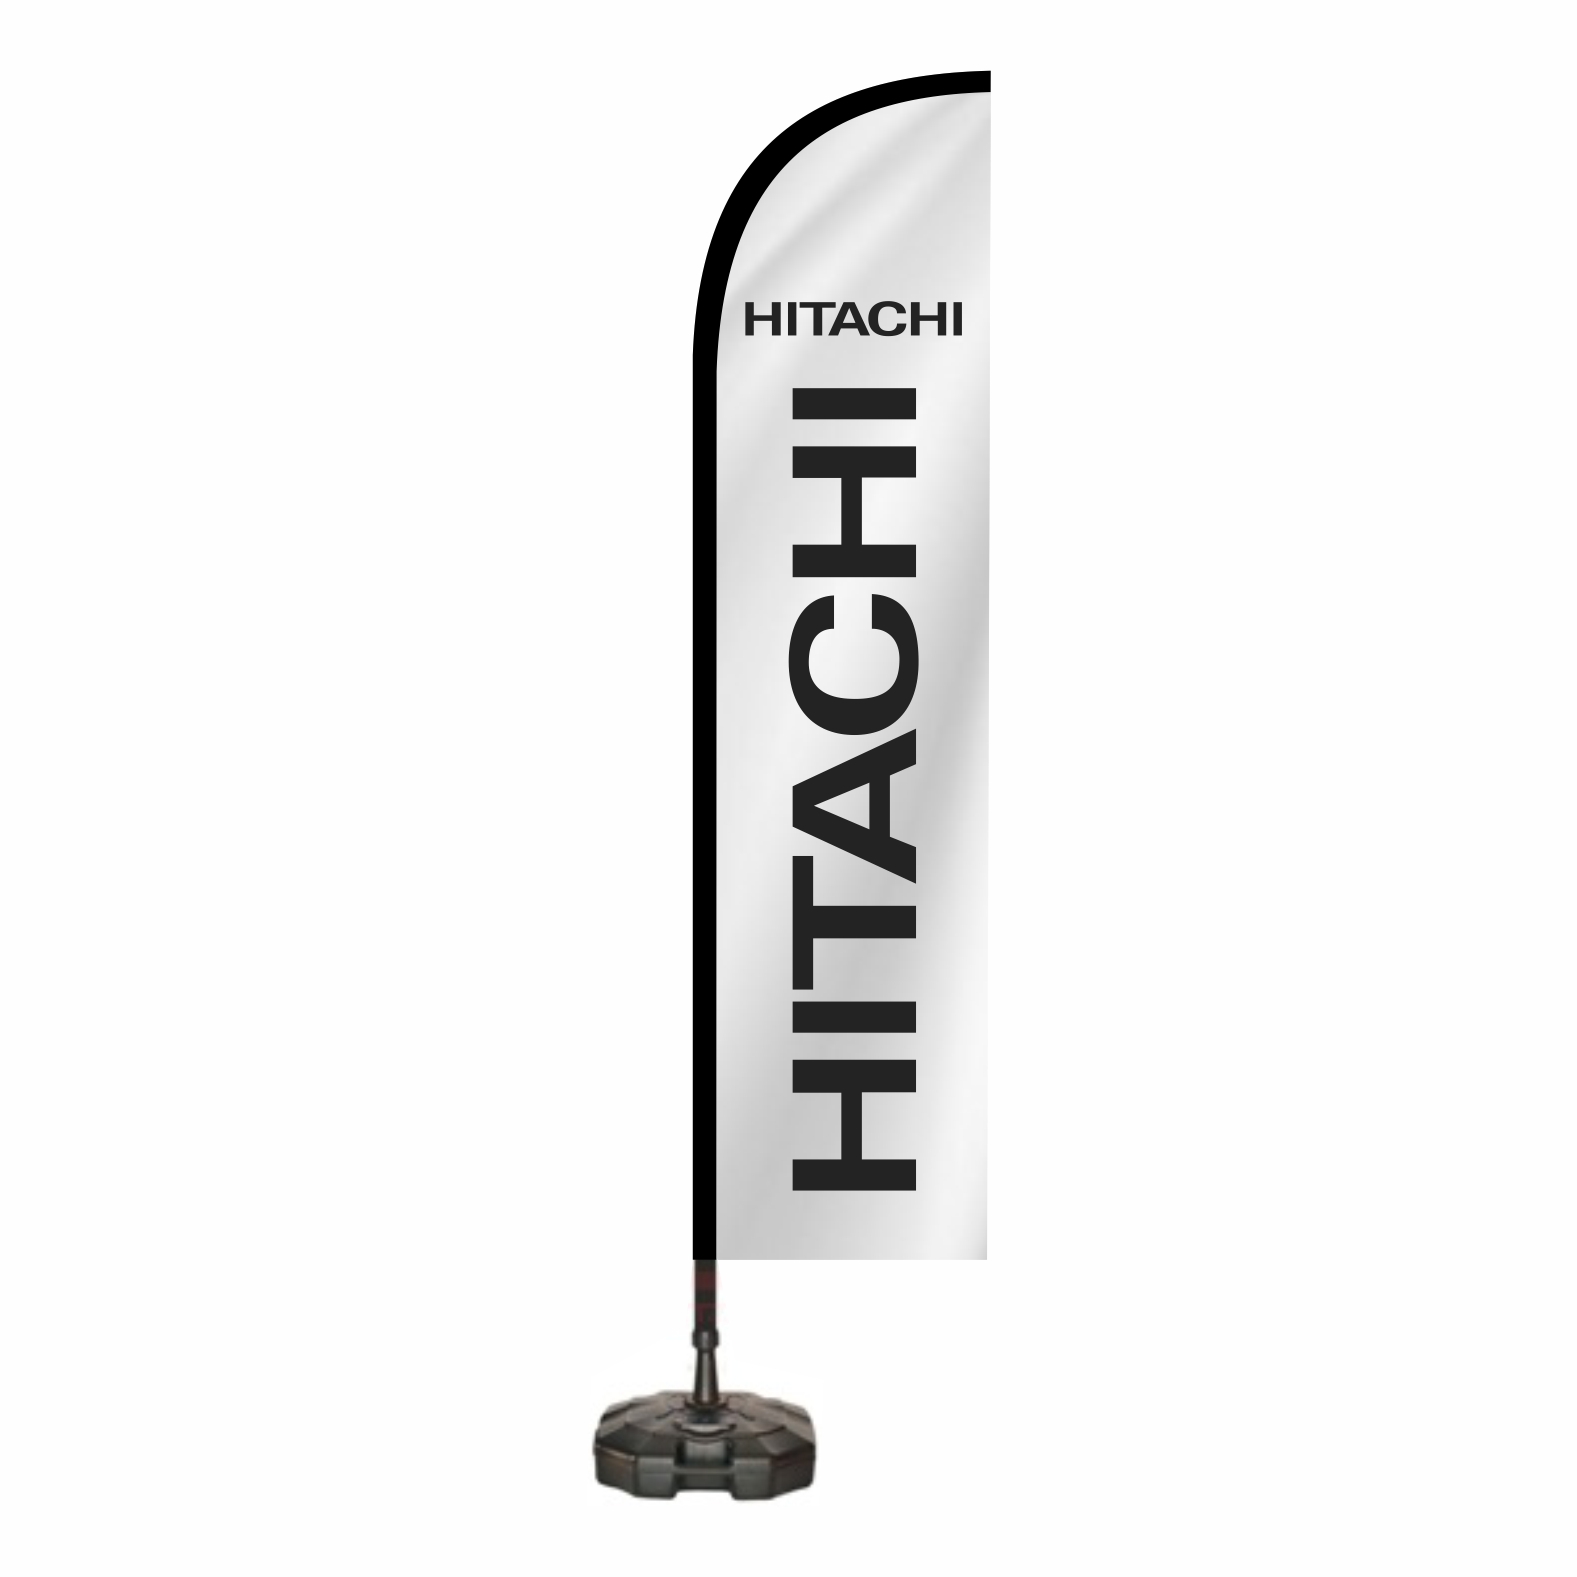 Hitachi Reklam Bayra Nerede satlr